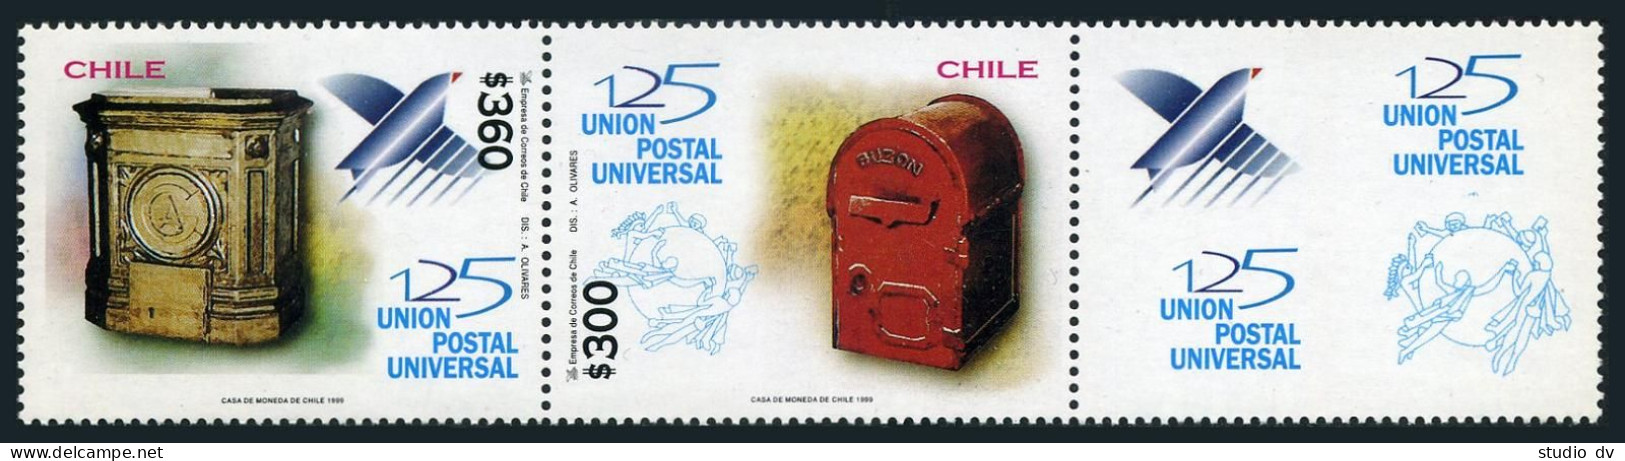 Chile 1302-1303a Pair/label, MNH. Michel 1913-1914 Zf. UPU-125, 1999. Mailbox. - Chili